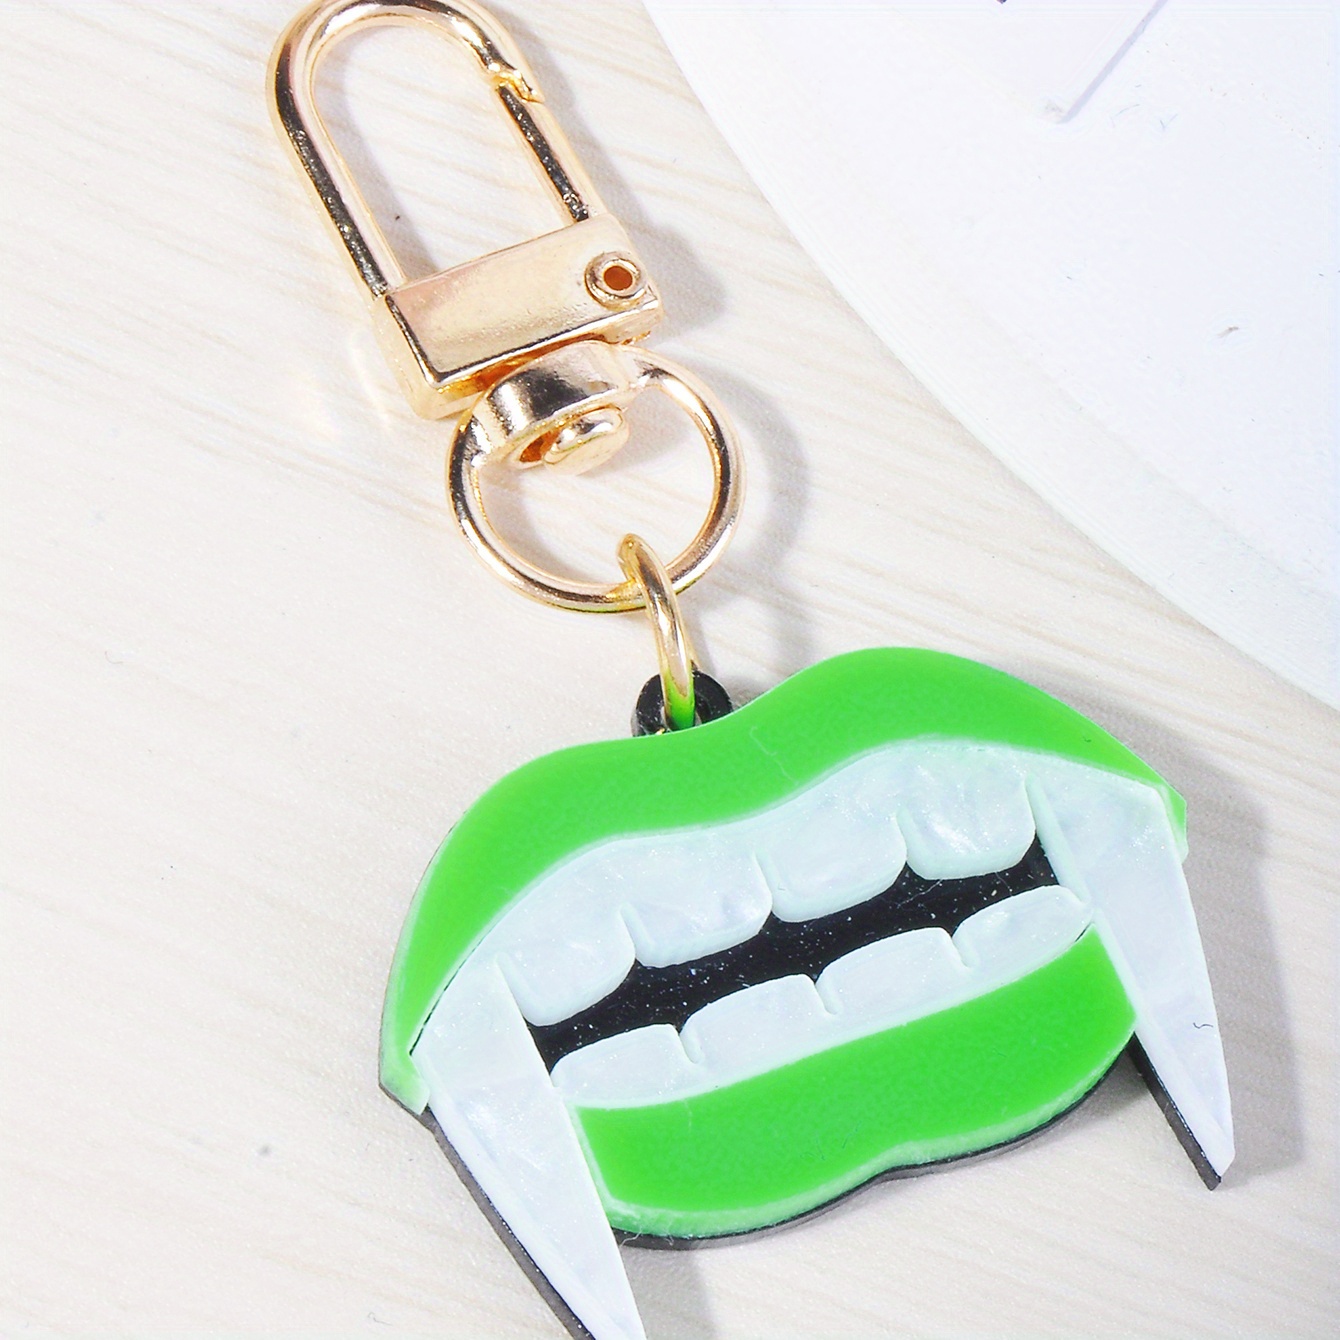 Resin Alien Shape Keychain Fashion Cute Cartoon Colorful Bag Key Chain  Ornament Bag Purse Charm Accessories - Temu Bahrain